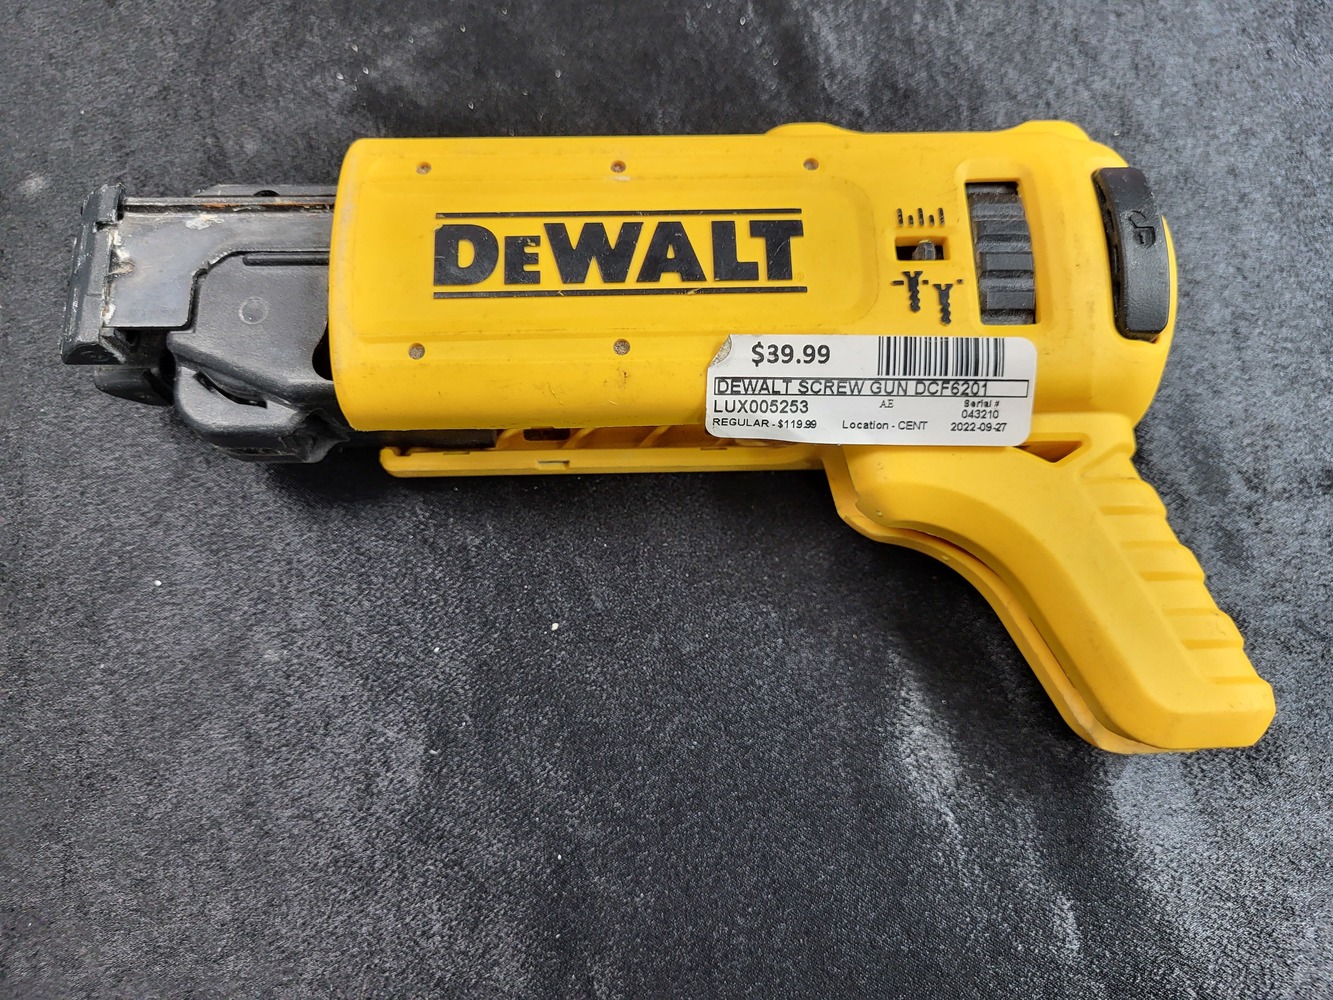 Dewalt Dcf6201 screw gun